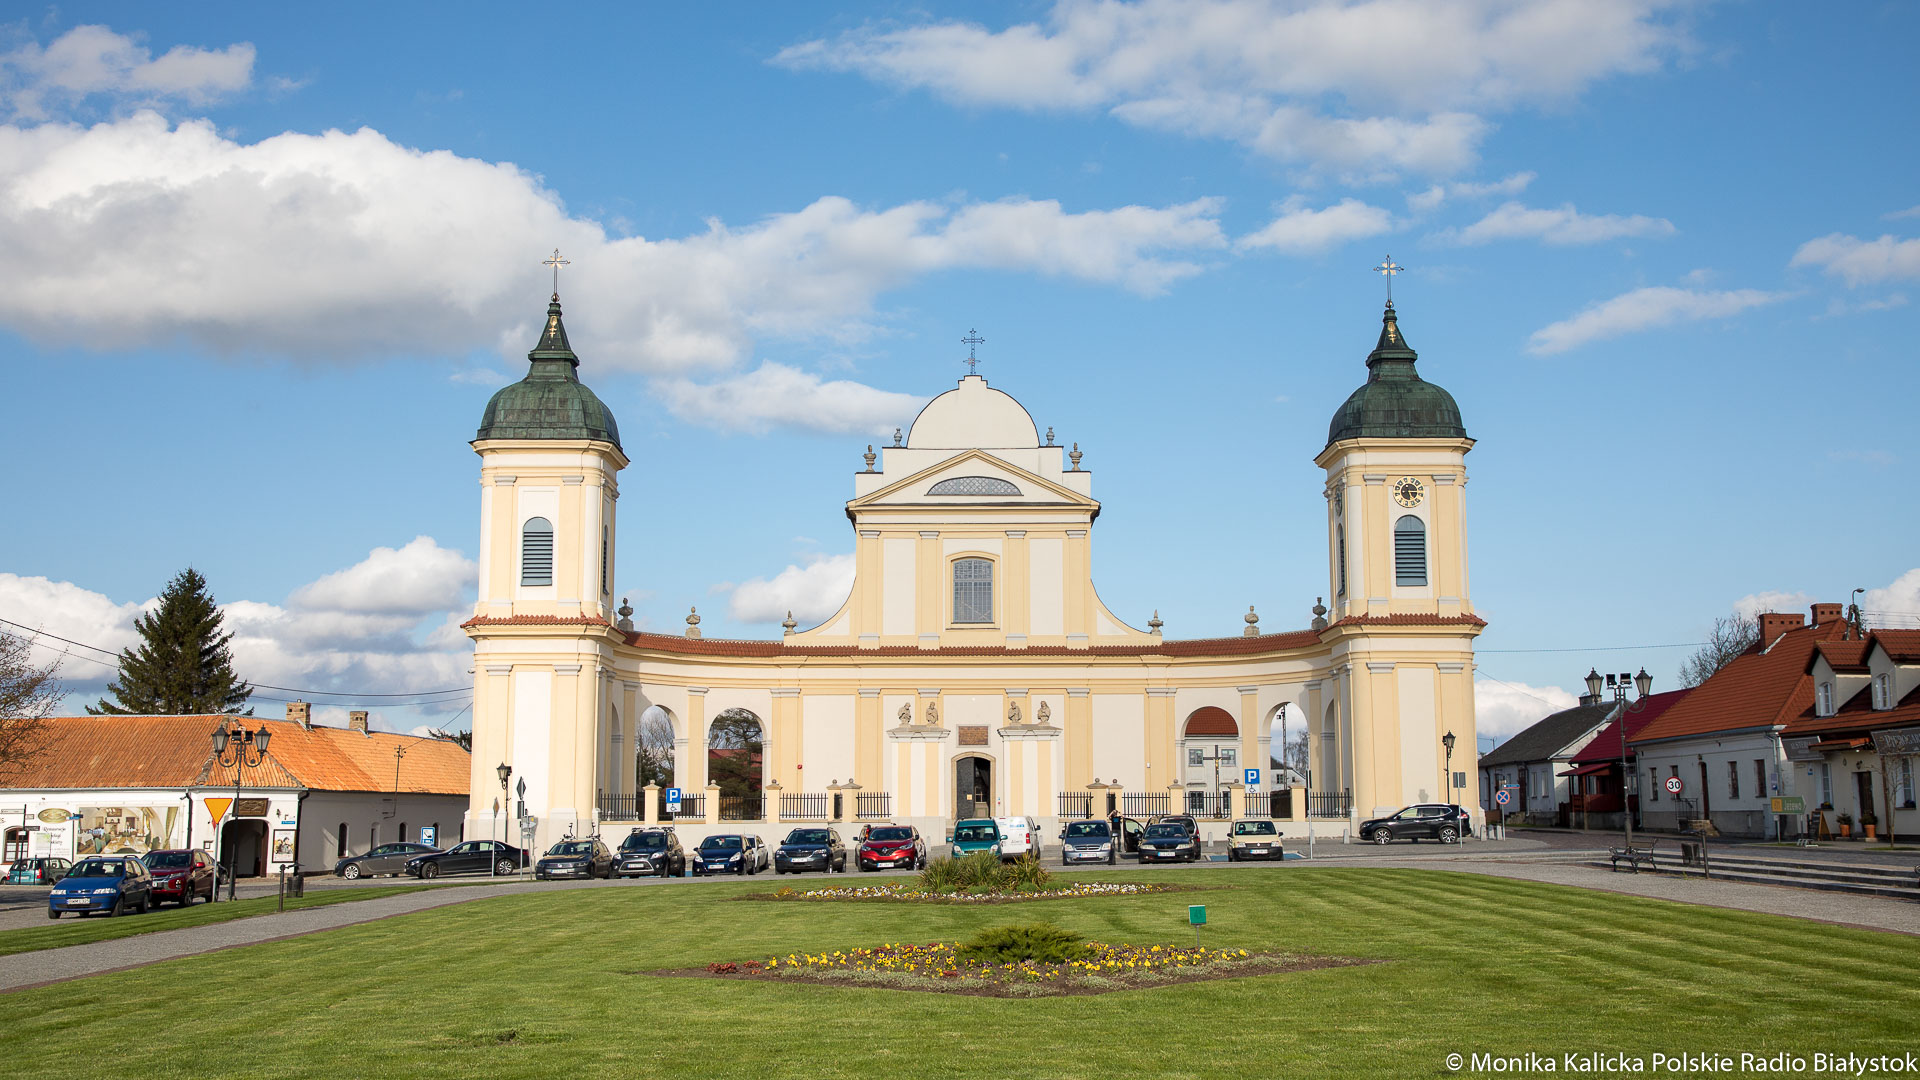 Kościół Trójcy Przenajświętszej w Tykocinie, fot. Monika Kalicka